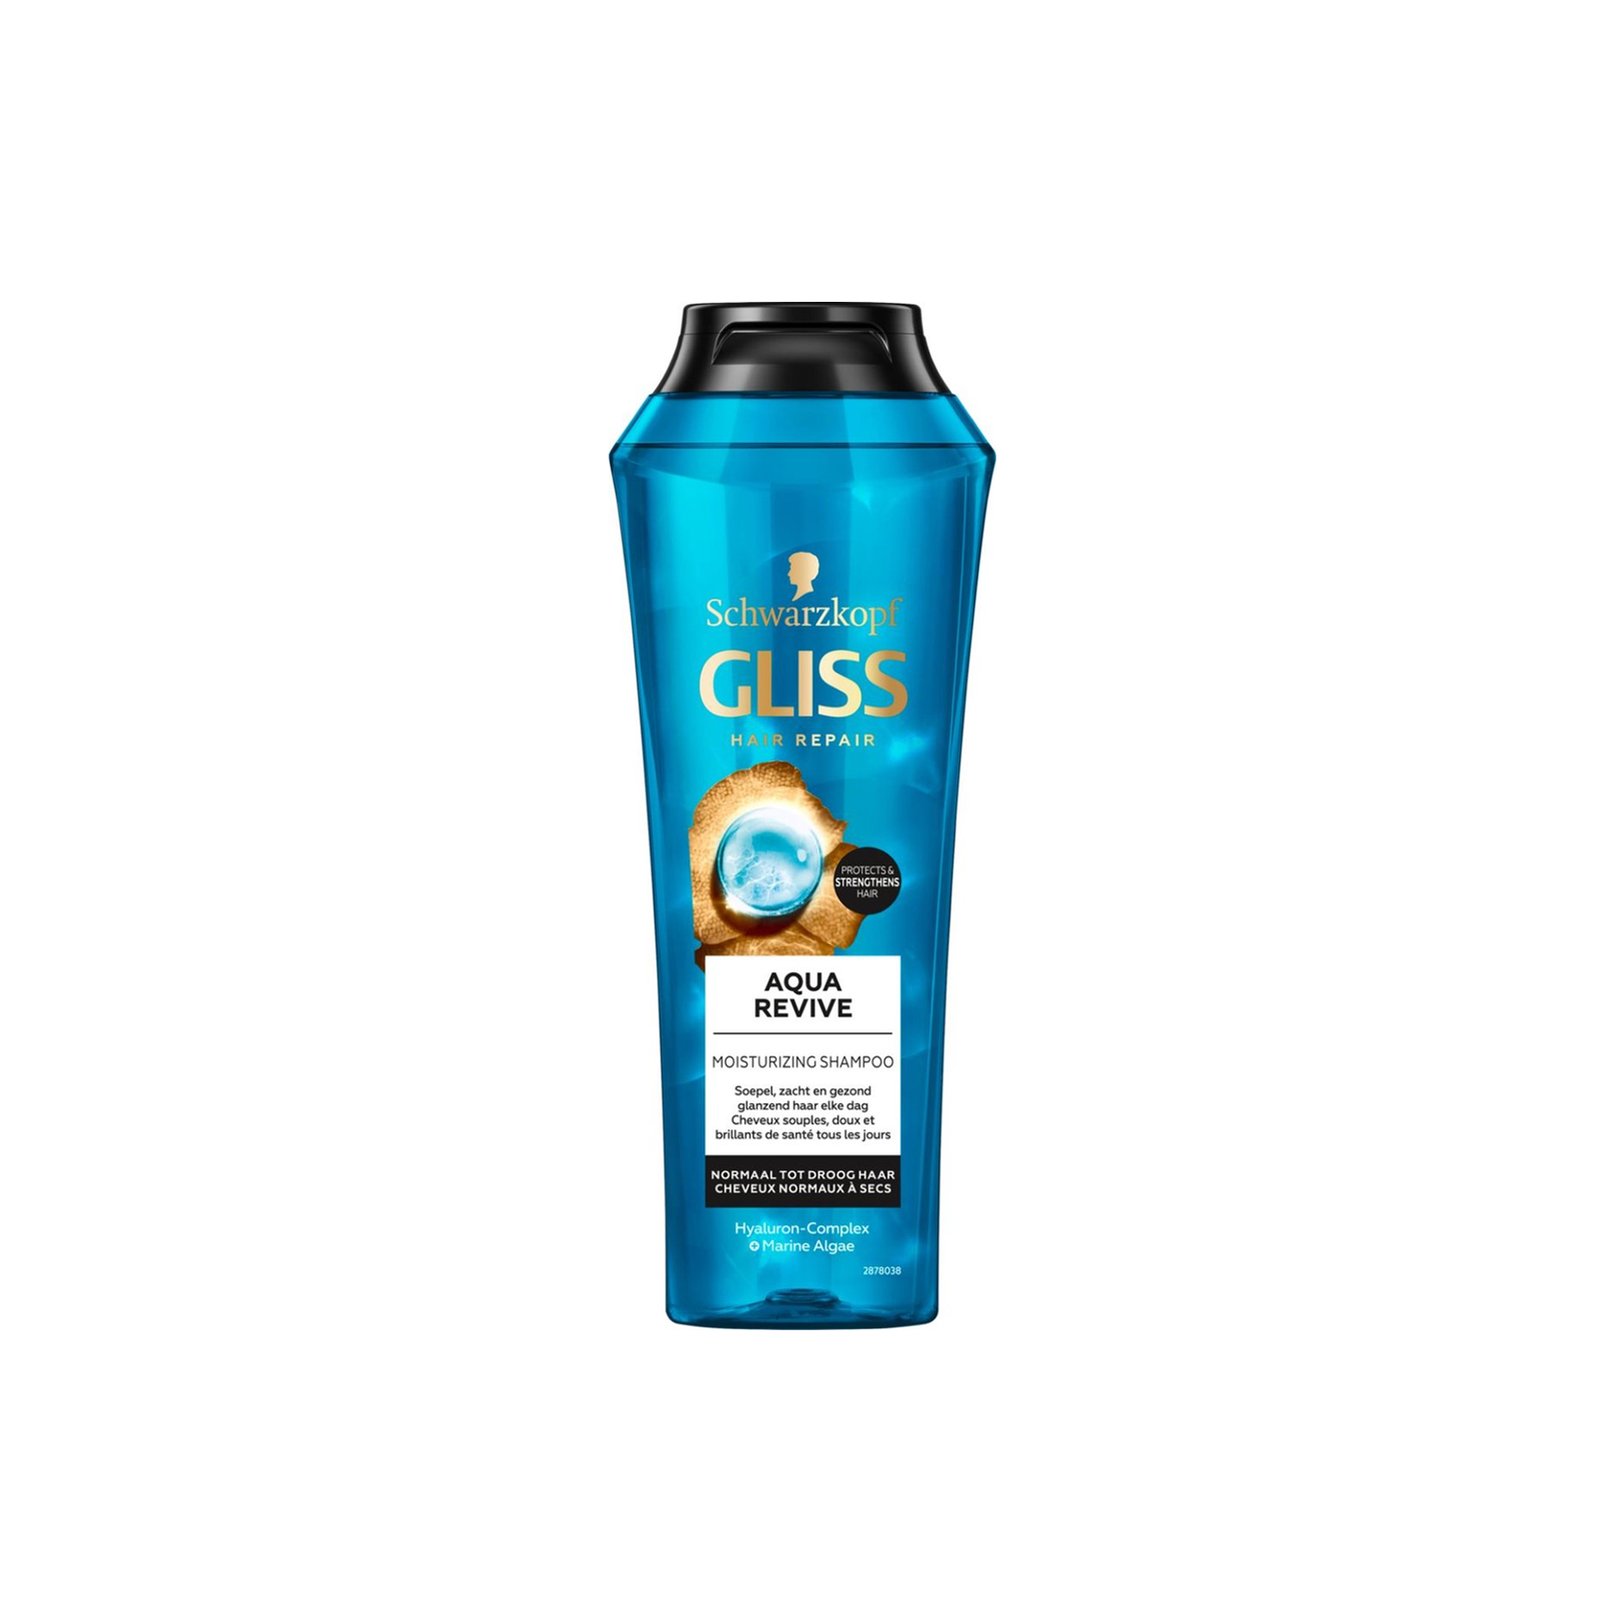 Schwarzkopf Gliss Aqua Revive Shampoo 250ml